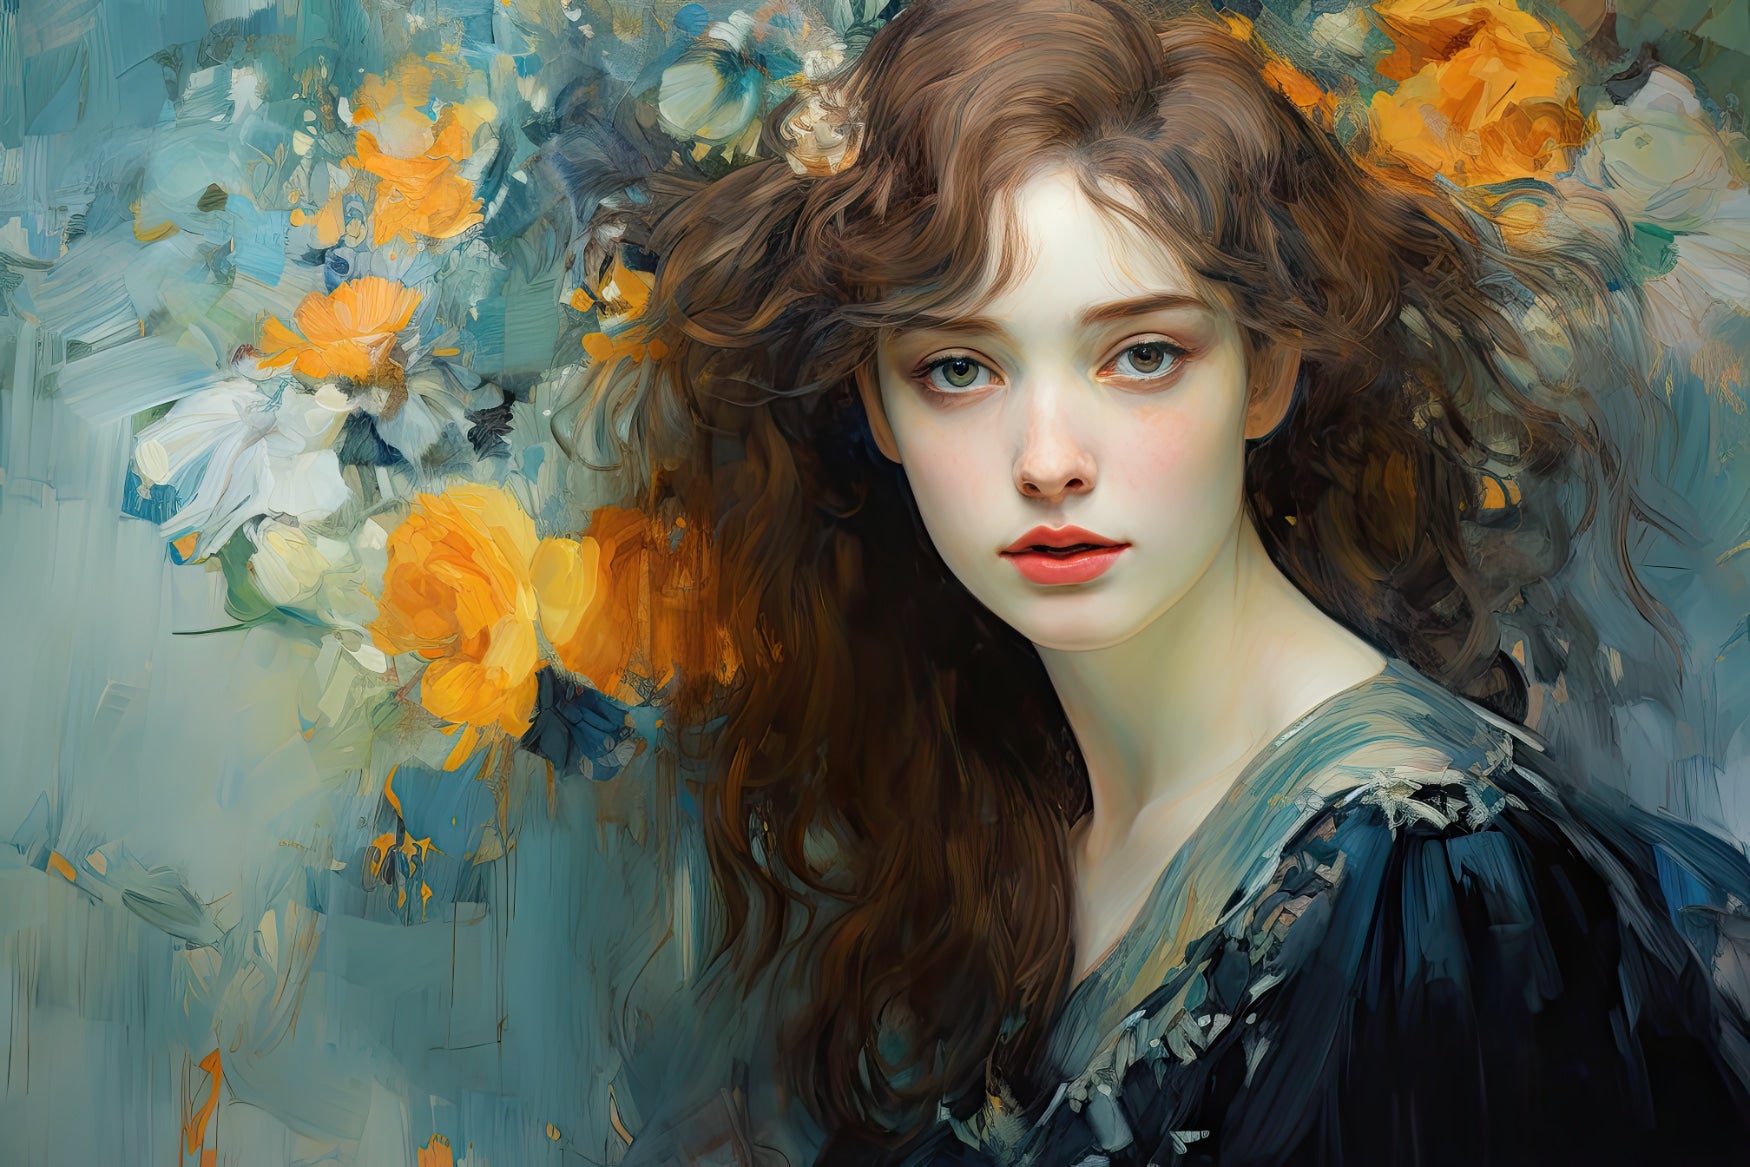 Portret van een jonge vrouw met verleidelijke blik - Bloemenflirt